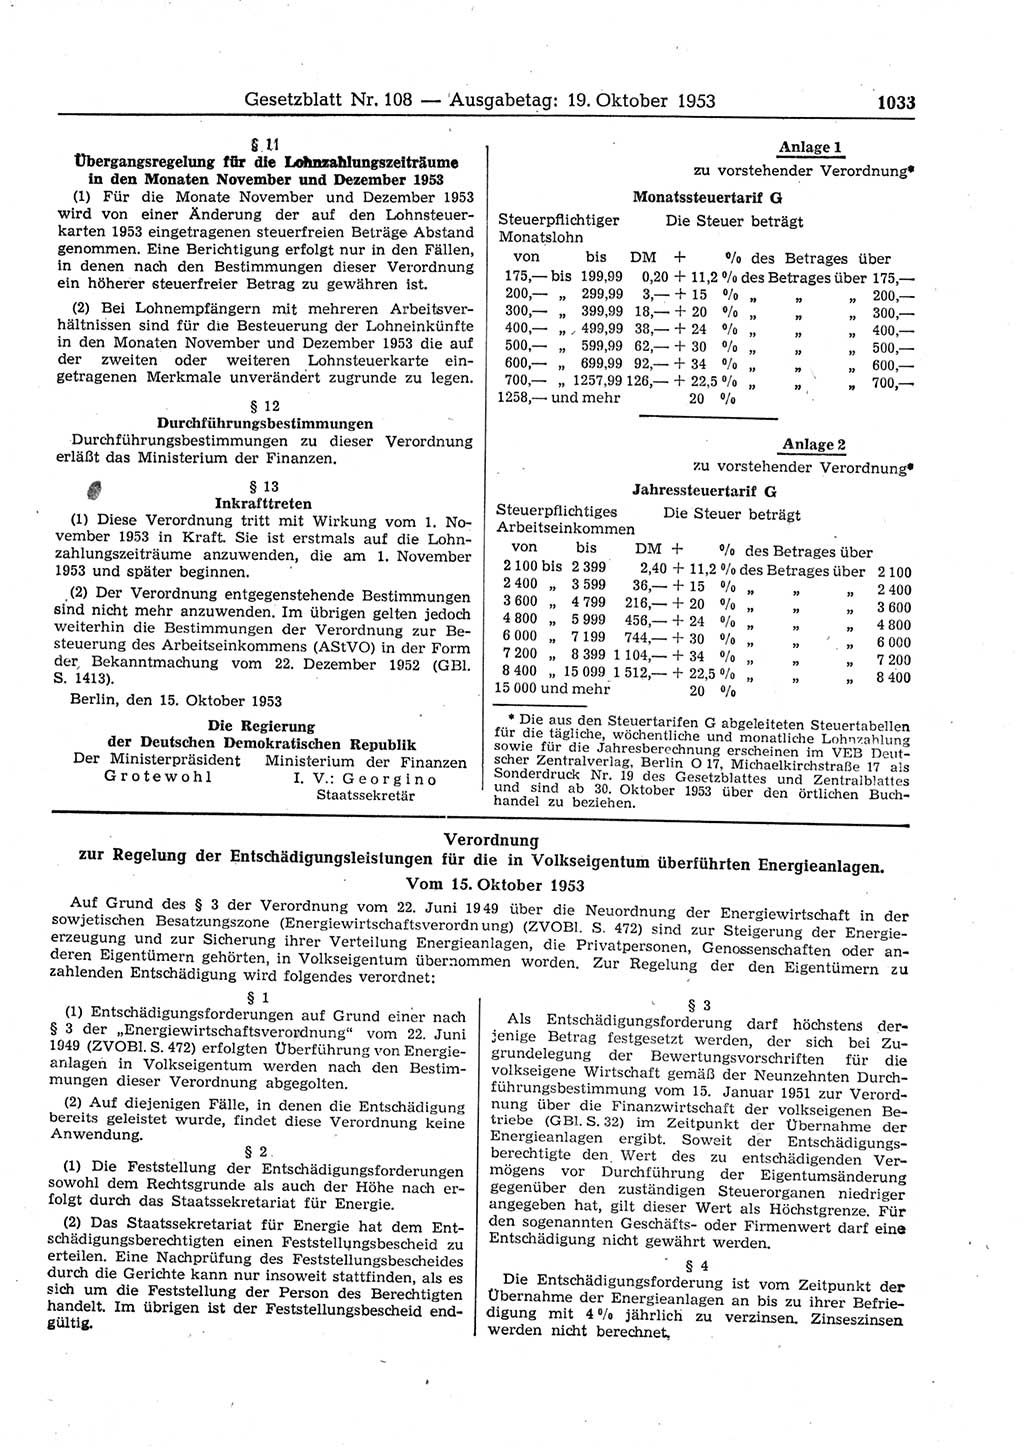 Gesetzblatt (GBl.) der Deutschen Demokratischen Republik (DDR) 1953, Seite 1033 (GBl. DDR 1953, S. 1033)